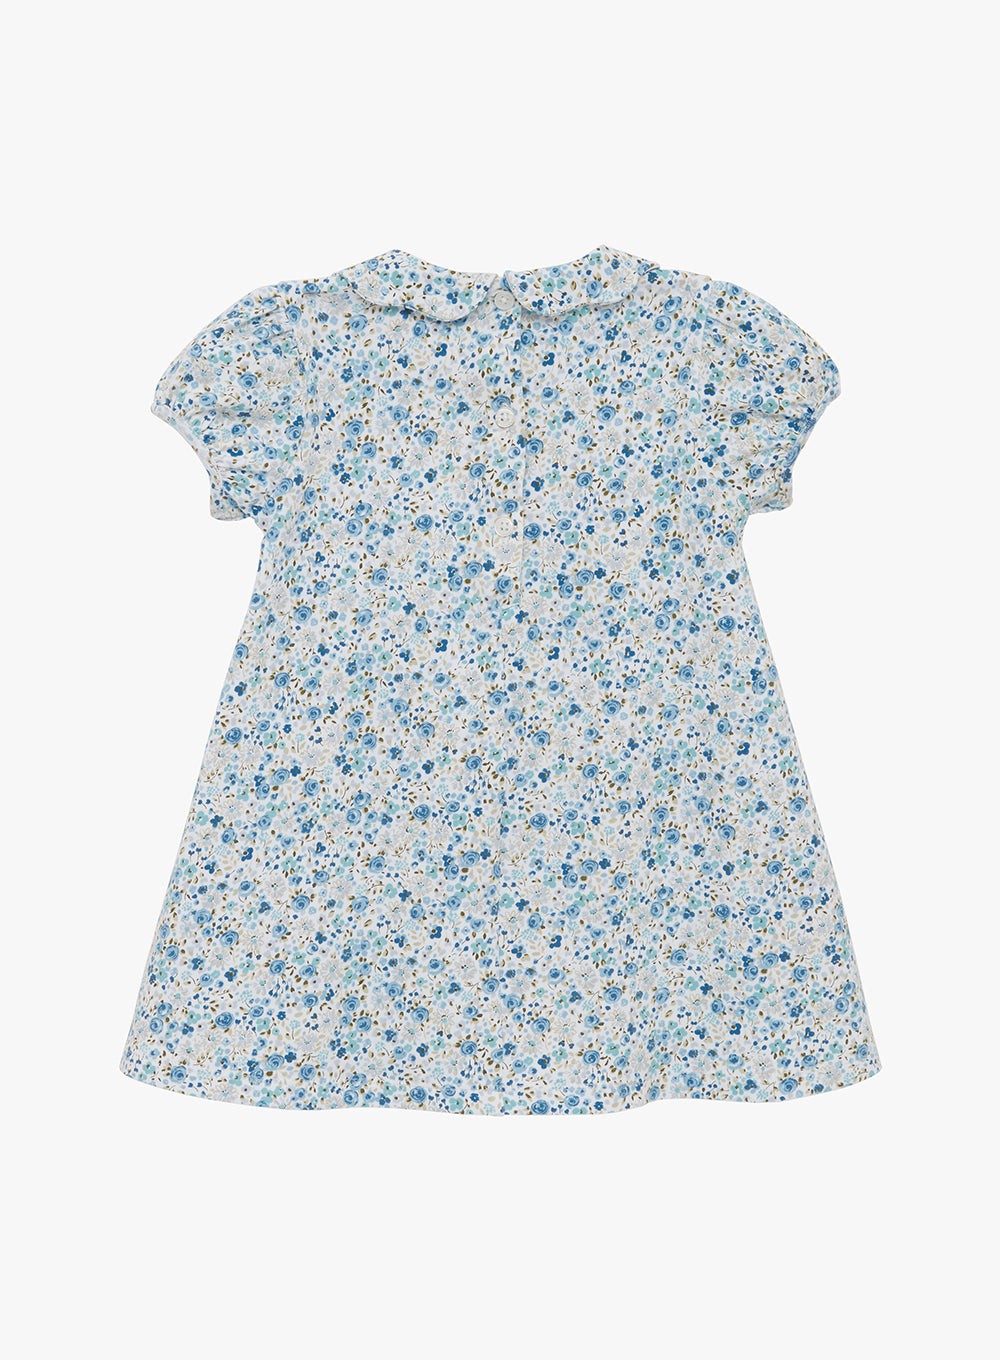 Confiture Dress Little Mabel Jersey Dress in Summer Blue Floral